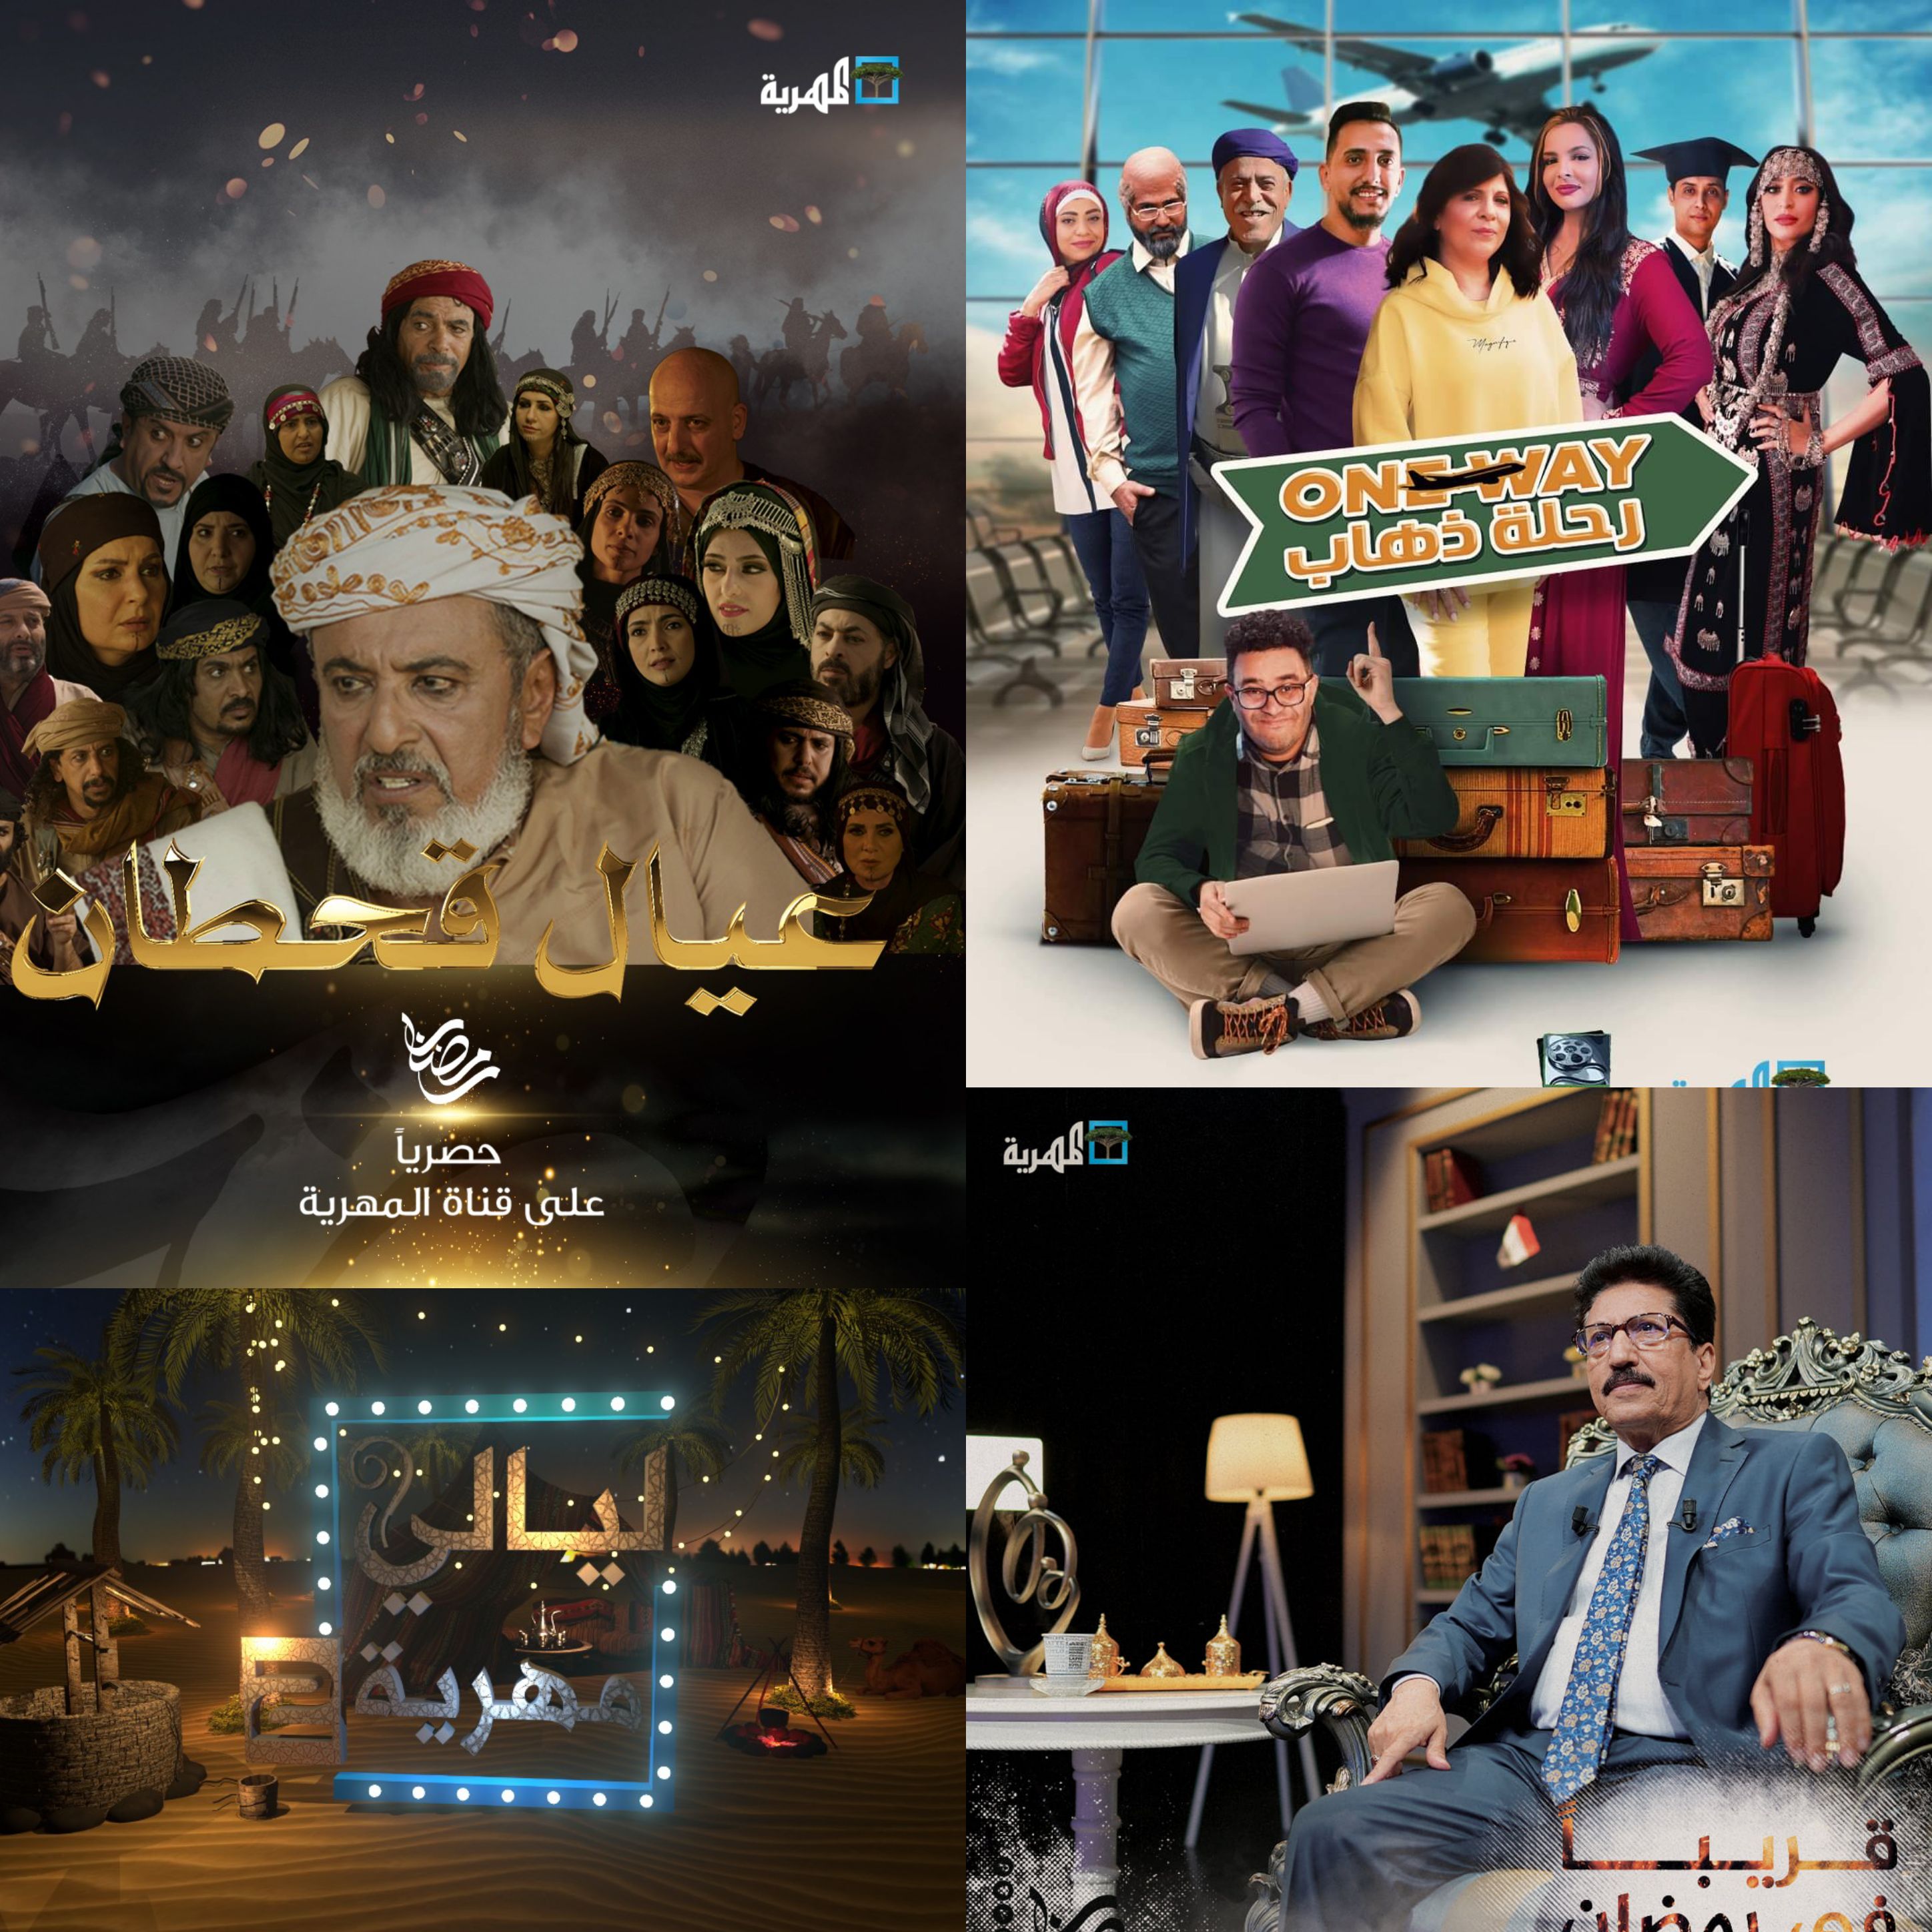 المهرية حكاية رمضان عن الخارطة البرامجية الرمضانية لقناة المهرية الفضائية